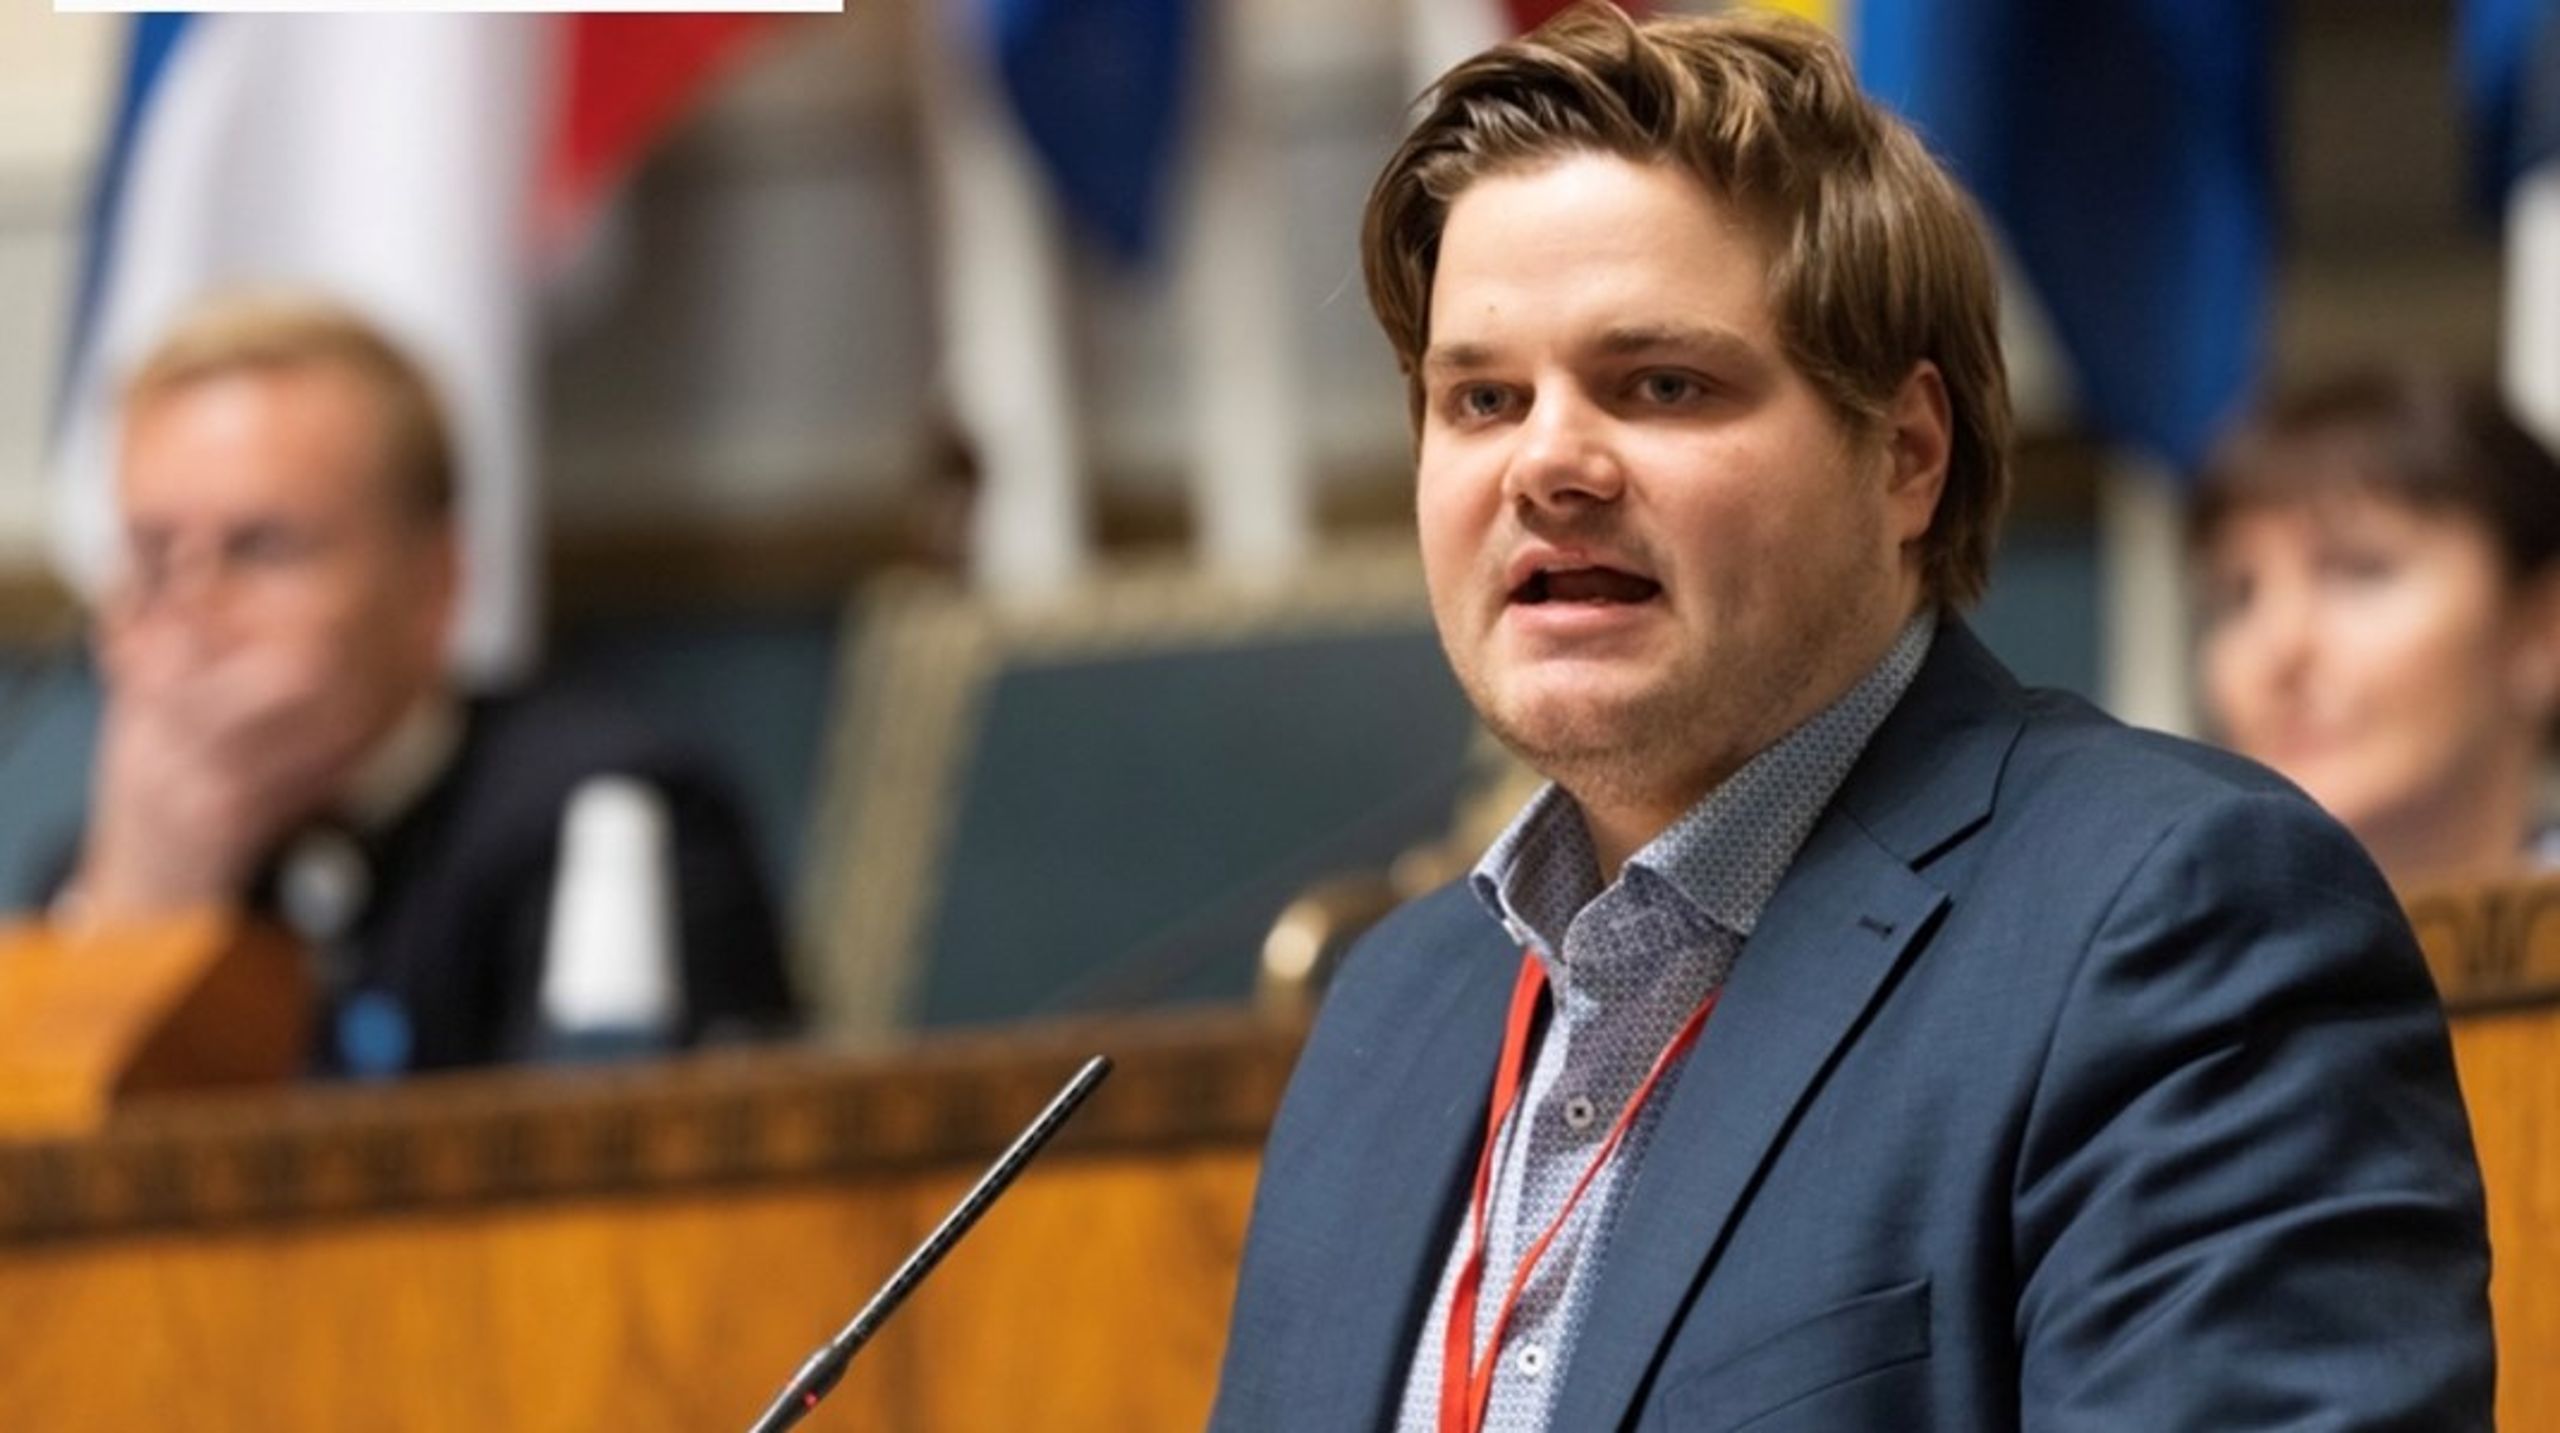 Tobias Drevland Lund ble valgt inn på Stortinget for Rødt fra Telemark i 2021, med noen få hundre stemmers margin.&nbsp;<br><br>